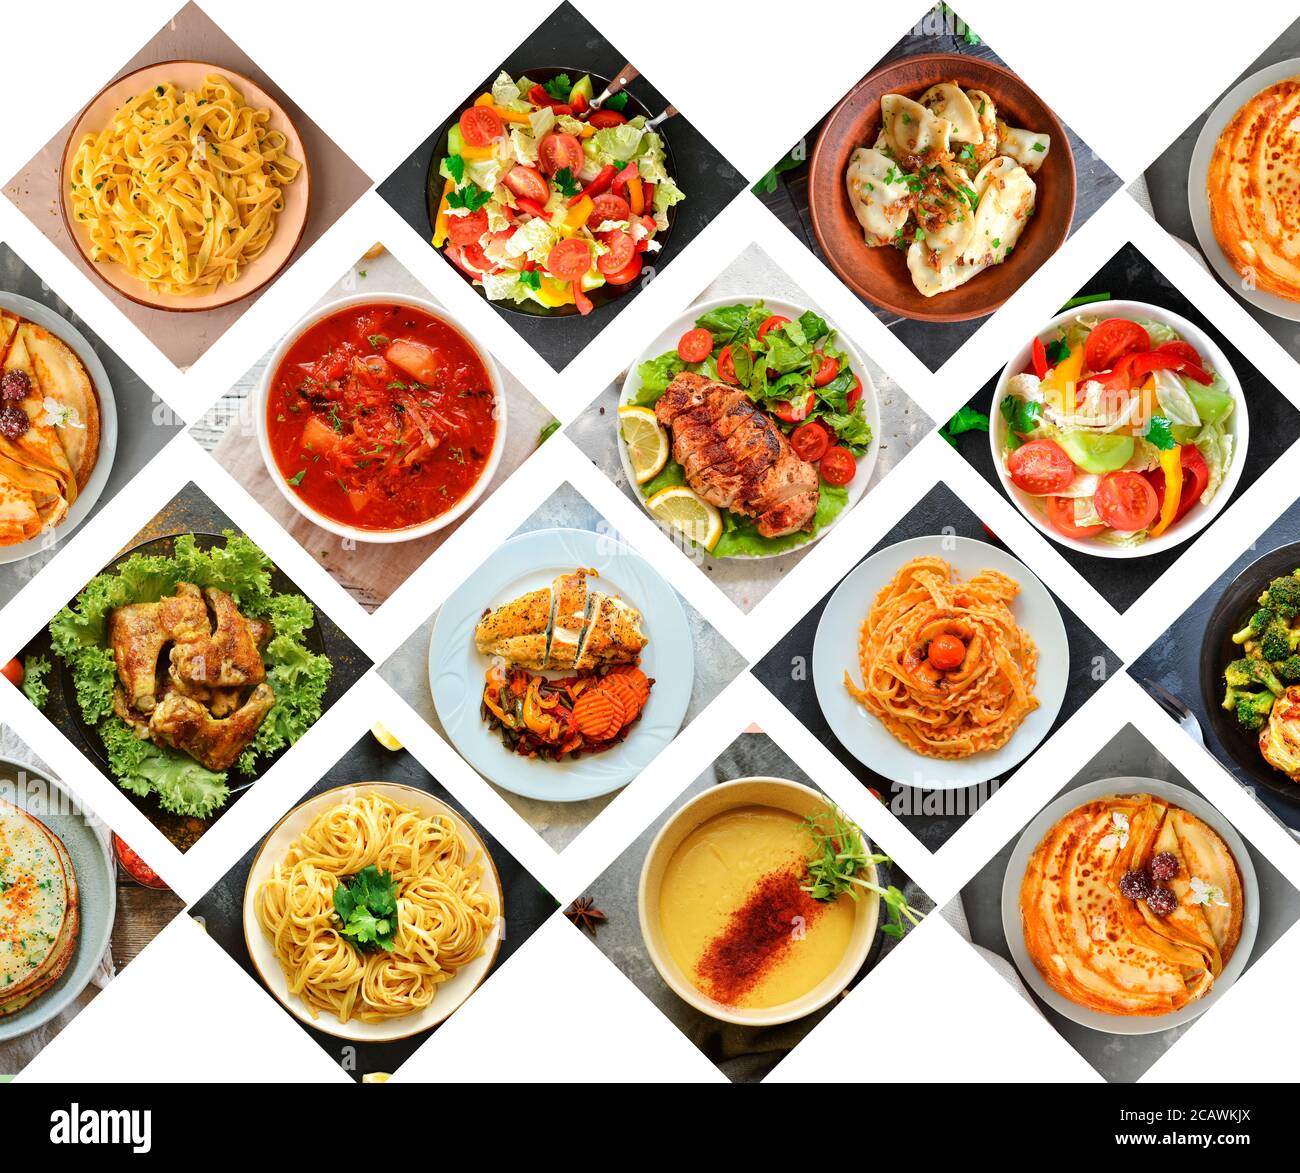 Collage aus natürlichen Lebensmitteln. Hintergrund für das Essen. Gemüse- und Fleischgerichte. Essen auf den Tellern. Menüabdeckung. Freier Speicherplatz für Text Stockfoto